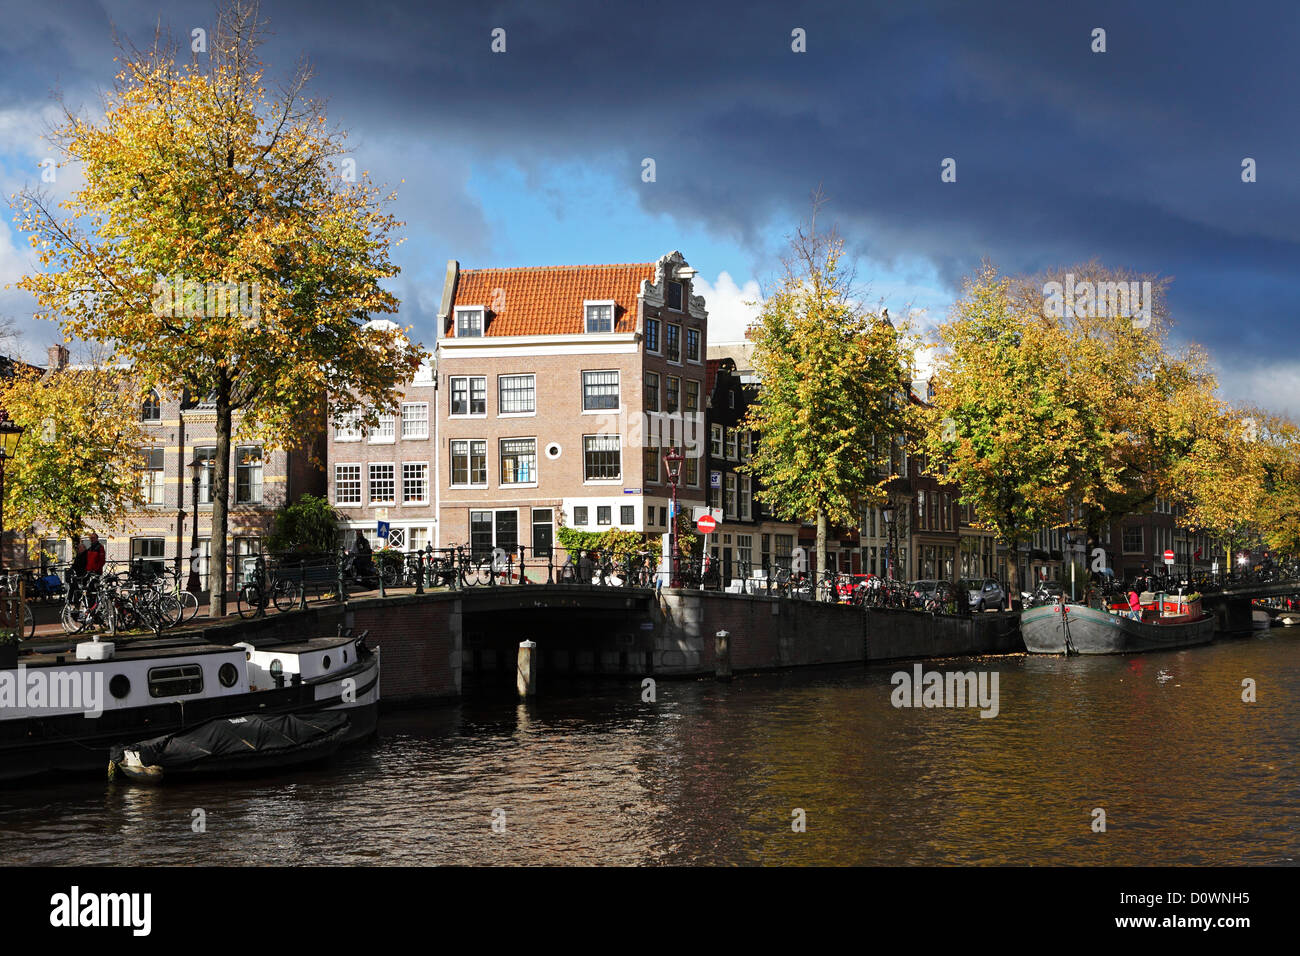 Wolken über einen Kanal über den Negen Straatjes (neun Straßen) Stadtteil von Amsterdam, Holland, Niederlande. Stockfoto